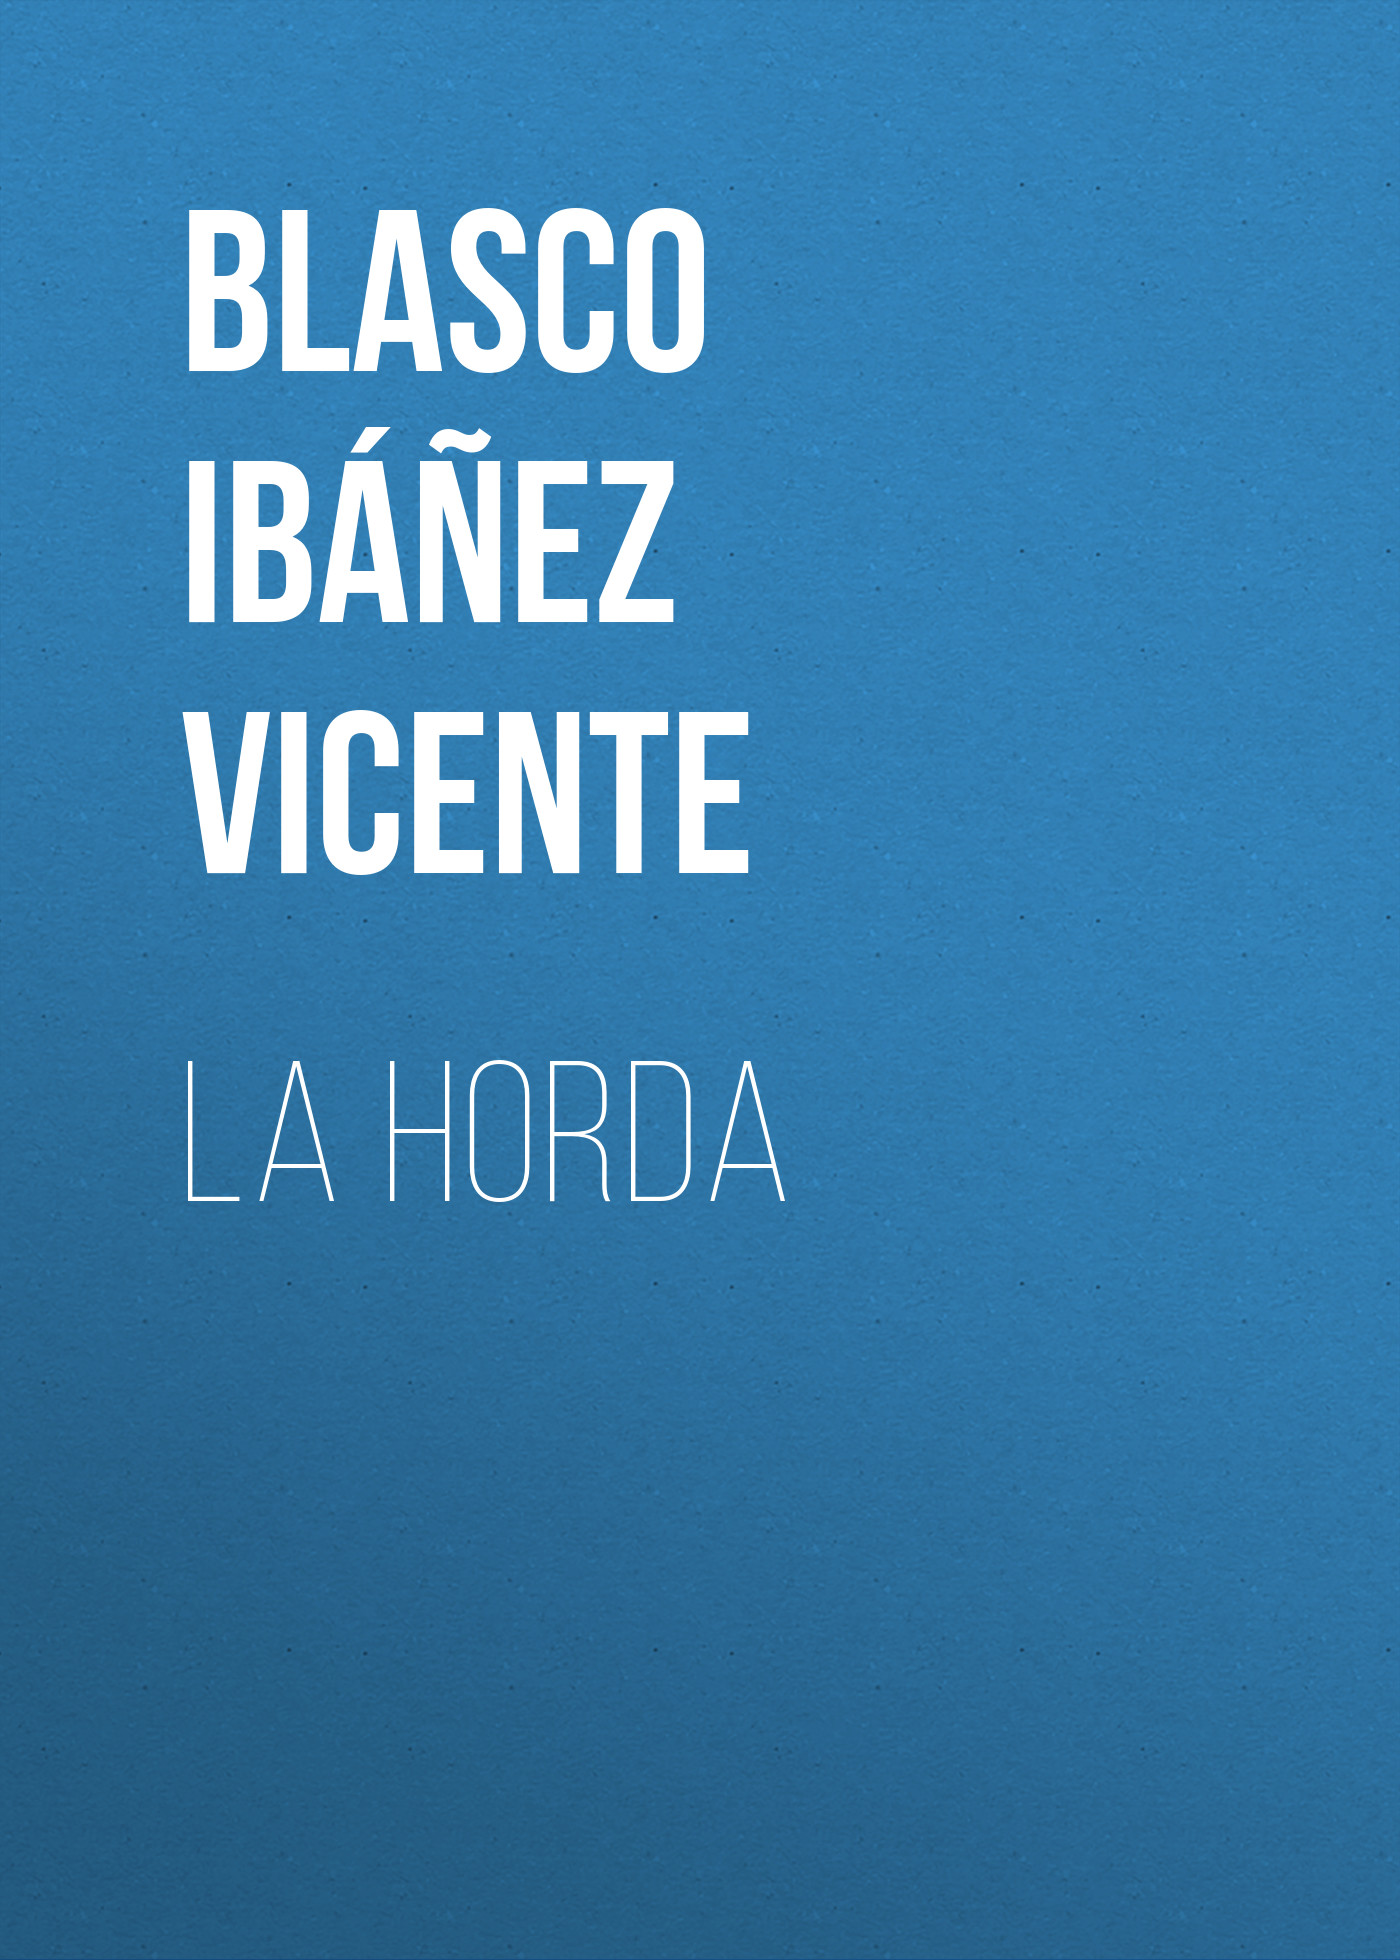 Книга La horda из серии , созданная Vicente Blasco Ibáñez, может относится к жанру Иностранные языки, Зарубежная старинная литература, Зарубежная классика. Стоимость электронной книги La horda с идентификатором 24173772 составляет 0.90 руб.